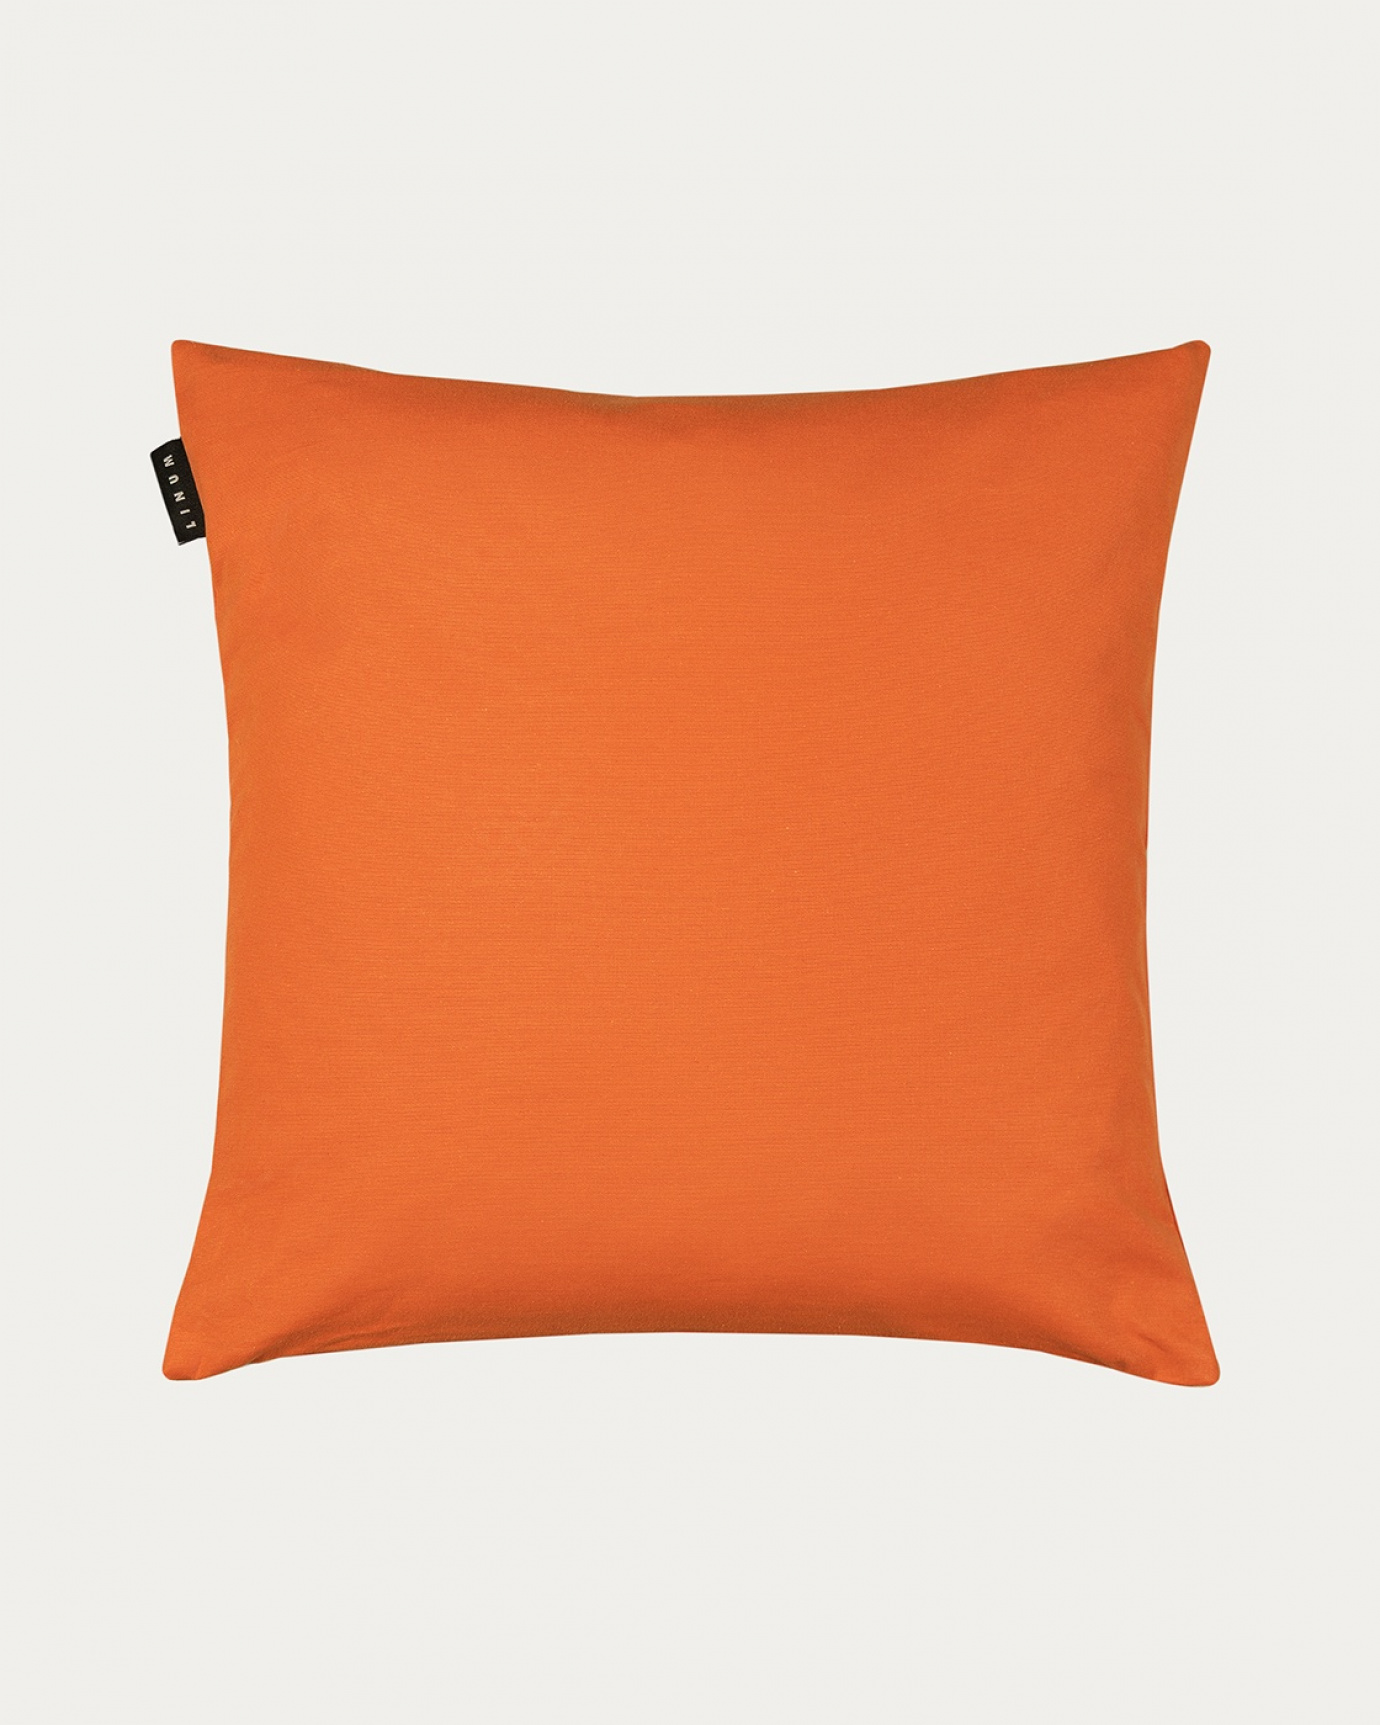 Immagine prodotto orange ANNABELL copricuscini in morbido cotone di LINUM DESIGN. Dimensioni 50x50 cm.